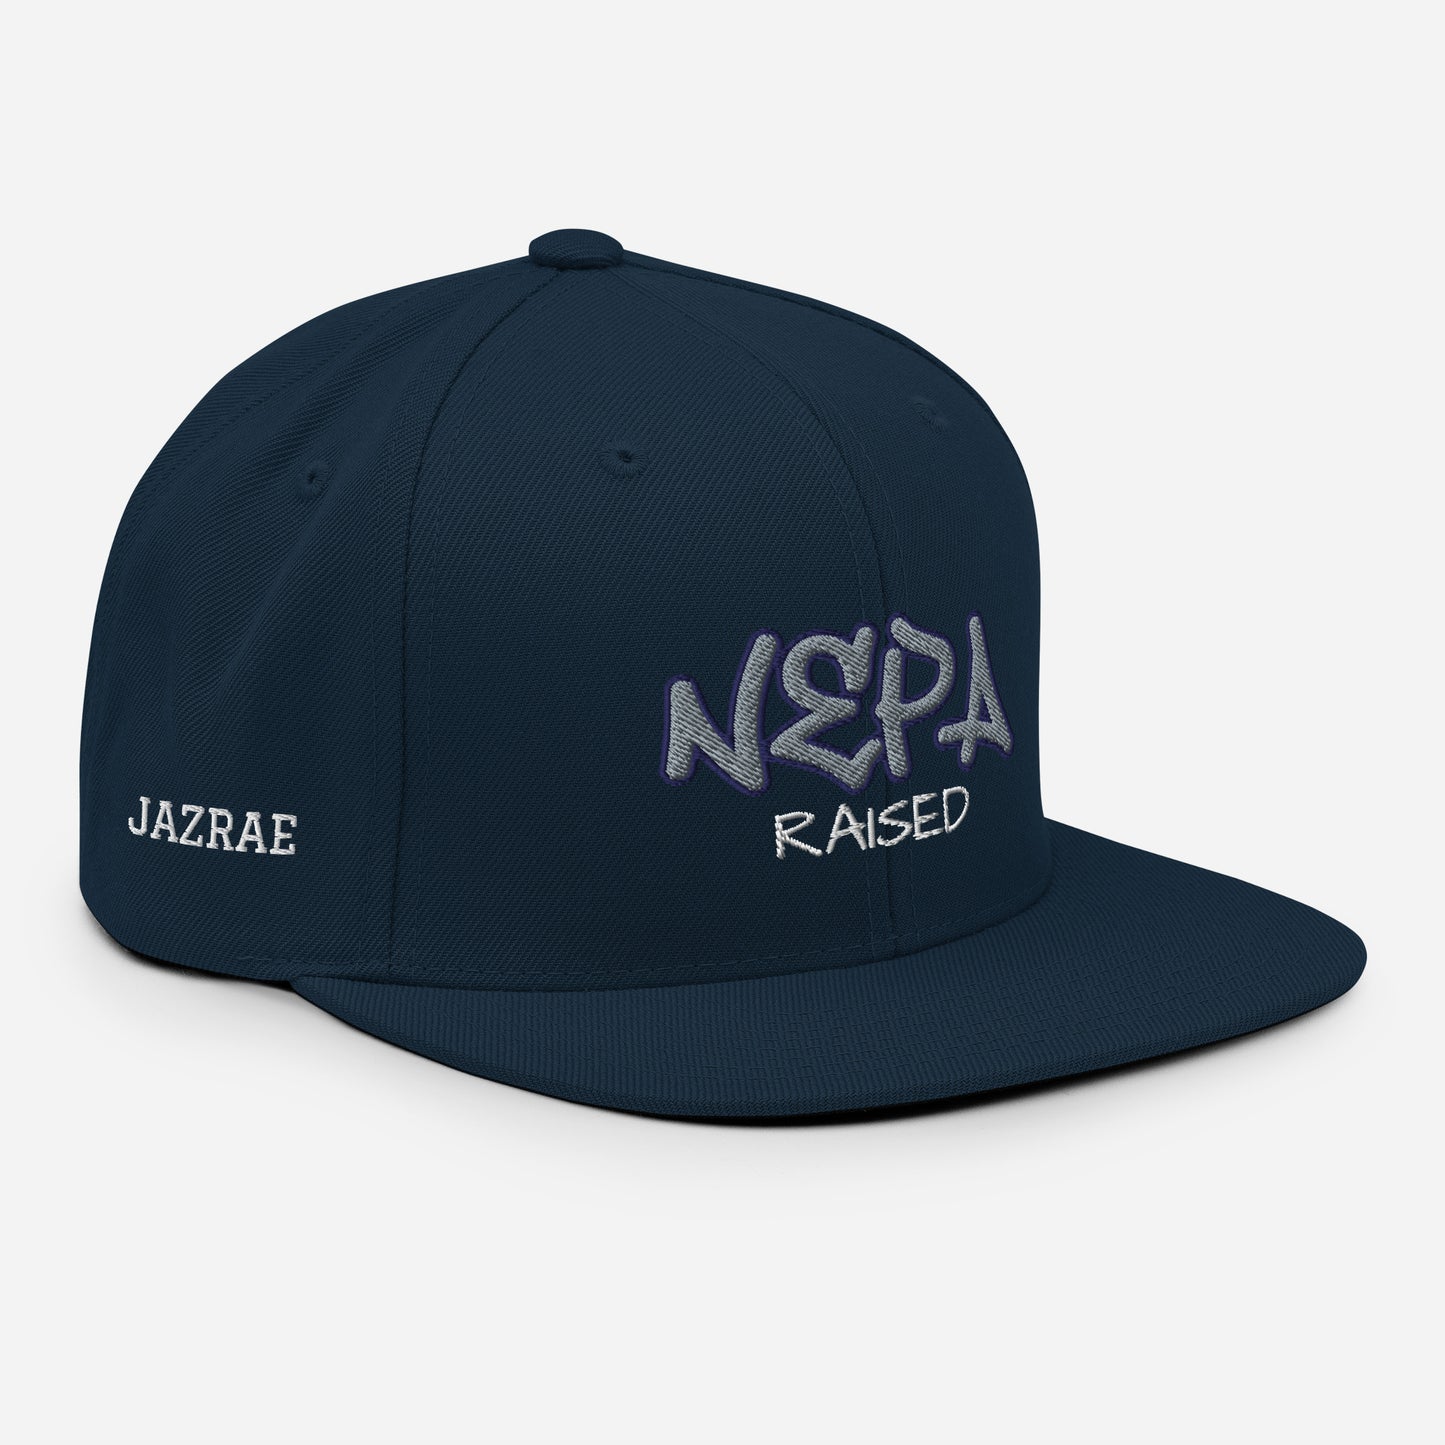 NEPA Raised Snapback Hat